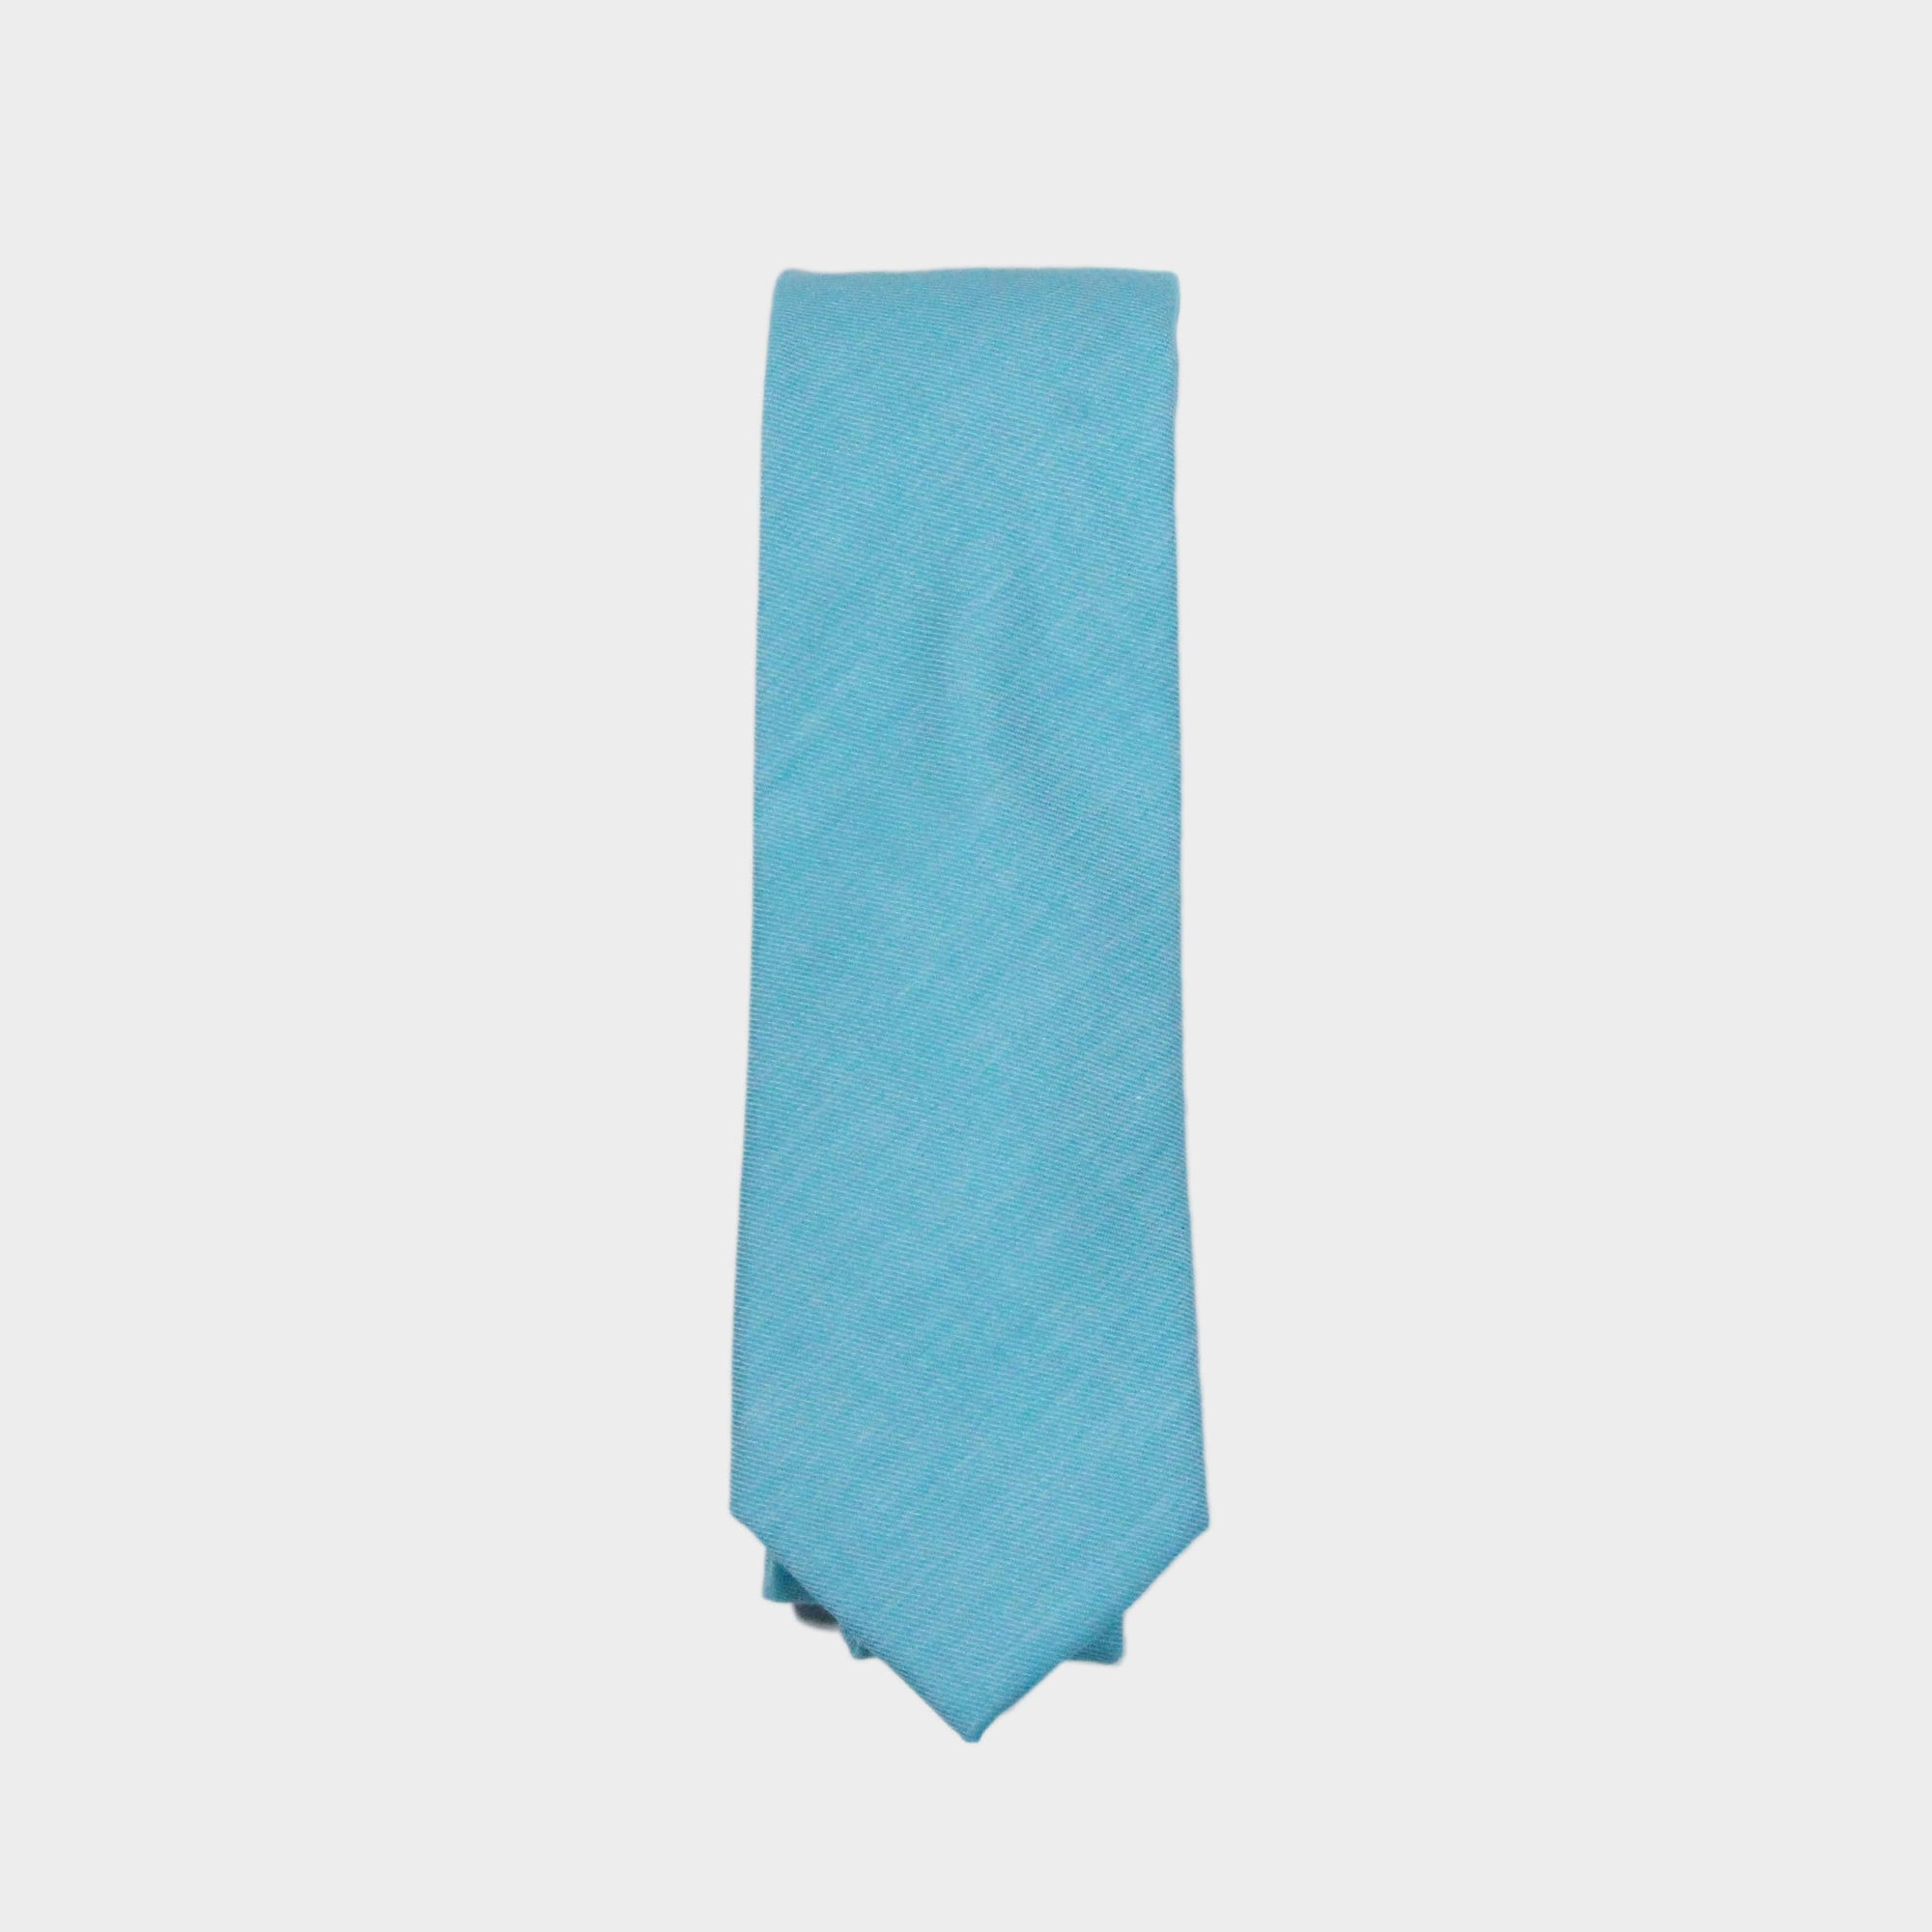 FELIX - Men's Tie